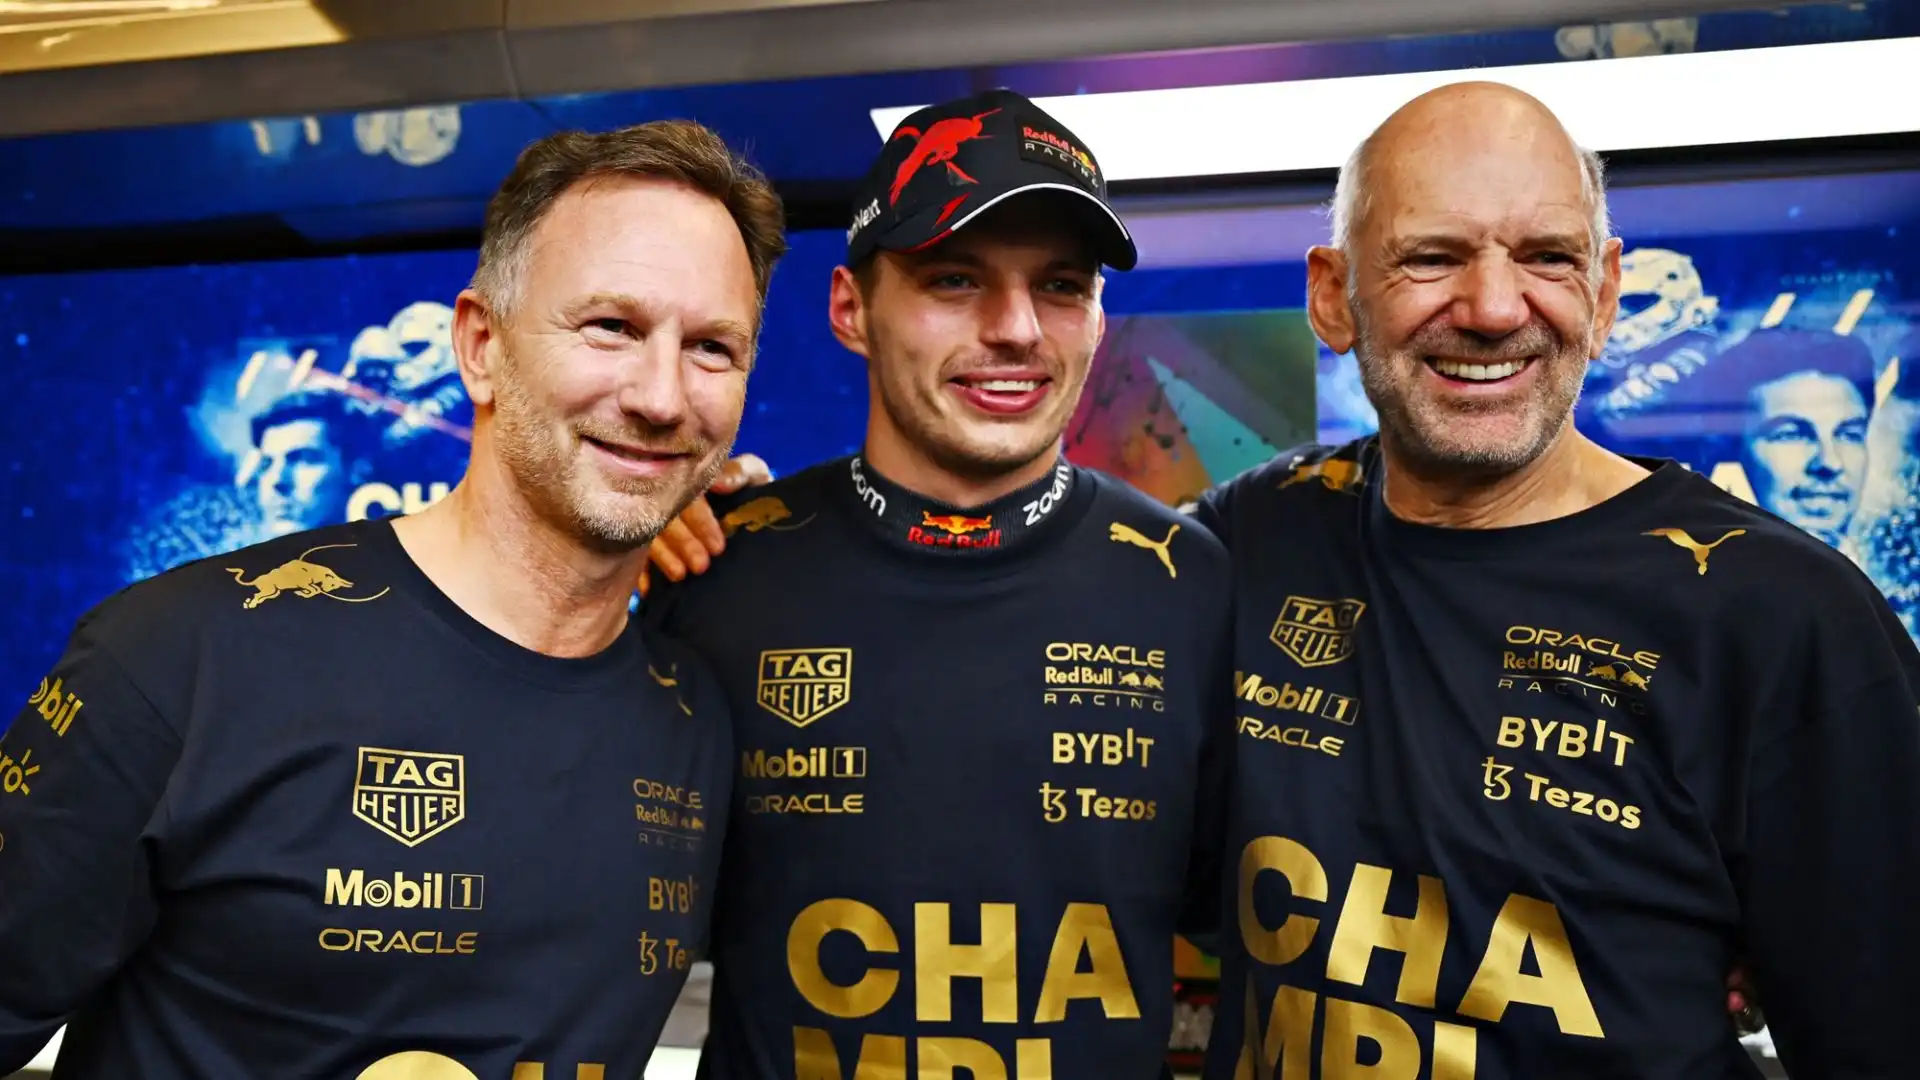 L'addio di Adrian Newey alla Red Bull ha inevitabilmente moltiplicato le voci sul possibile divorzio tra Max Verstappen e il team di Milton Keynes